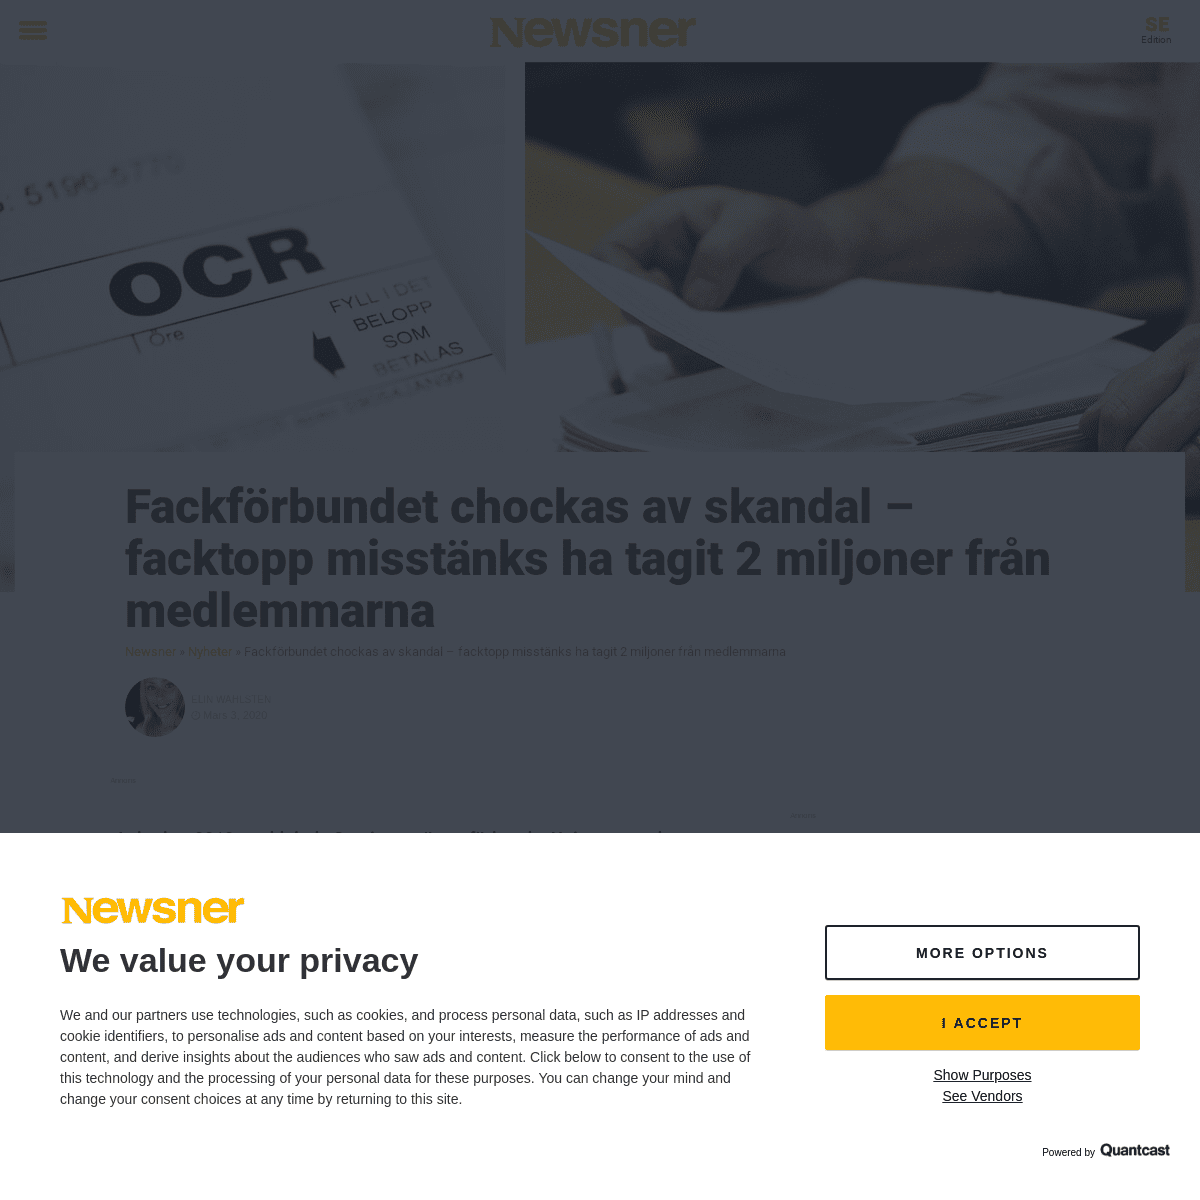 A complete backup of www.newsner.com/nyheter/fackforbundet-chockas-av-skandal-facktopp-misstanks-ha-tagit-2-miljoner-fran-medlem